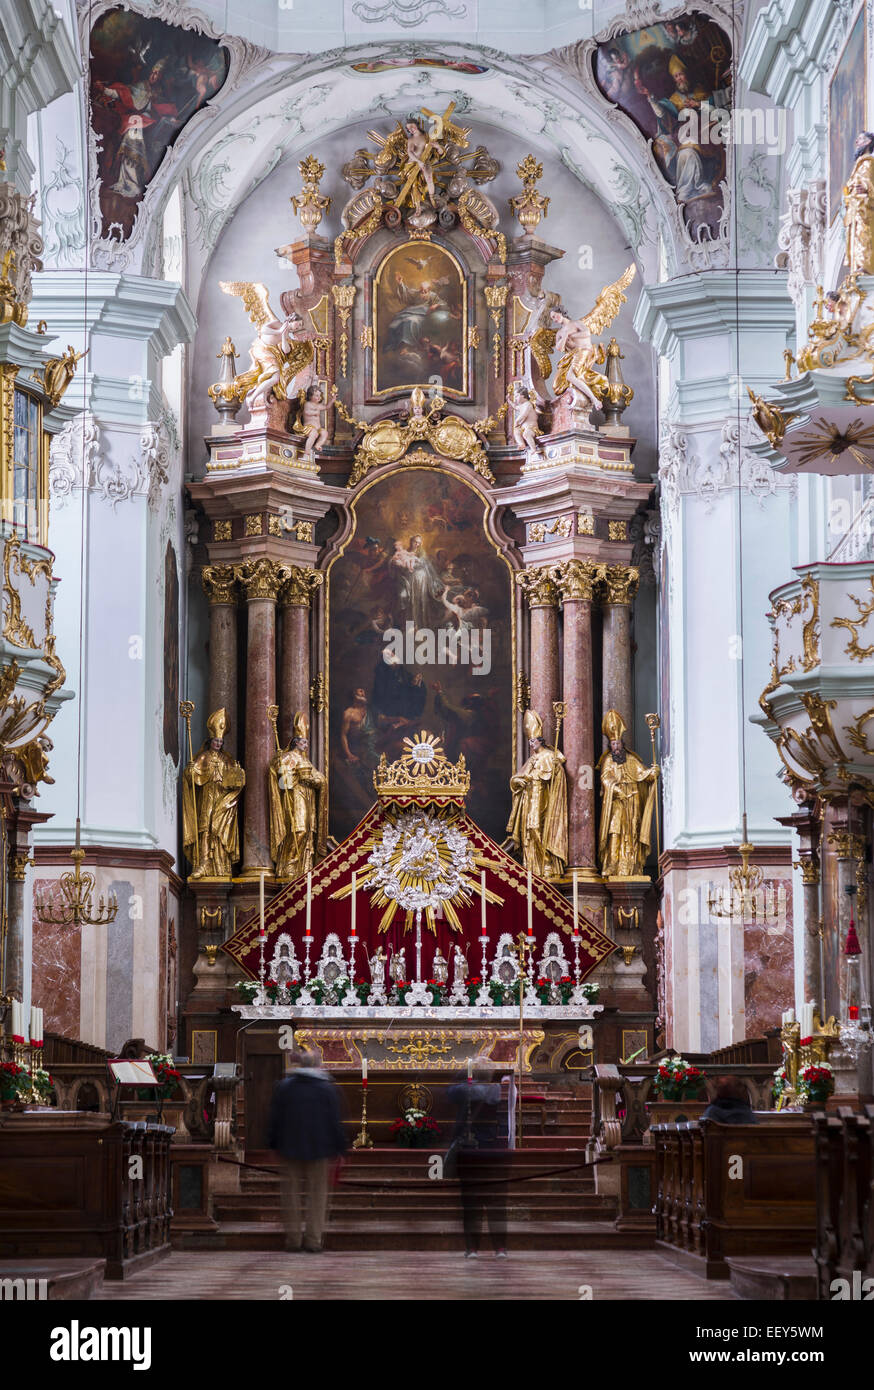 Altar und Innenraum von St. Peters Abbey, Stift St. Peter, katholische Kirche in Salzburg, Österreich, Europa Stockfoto